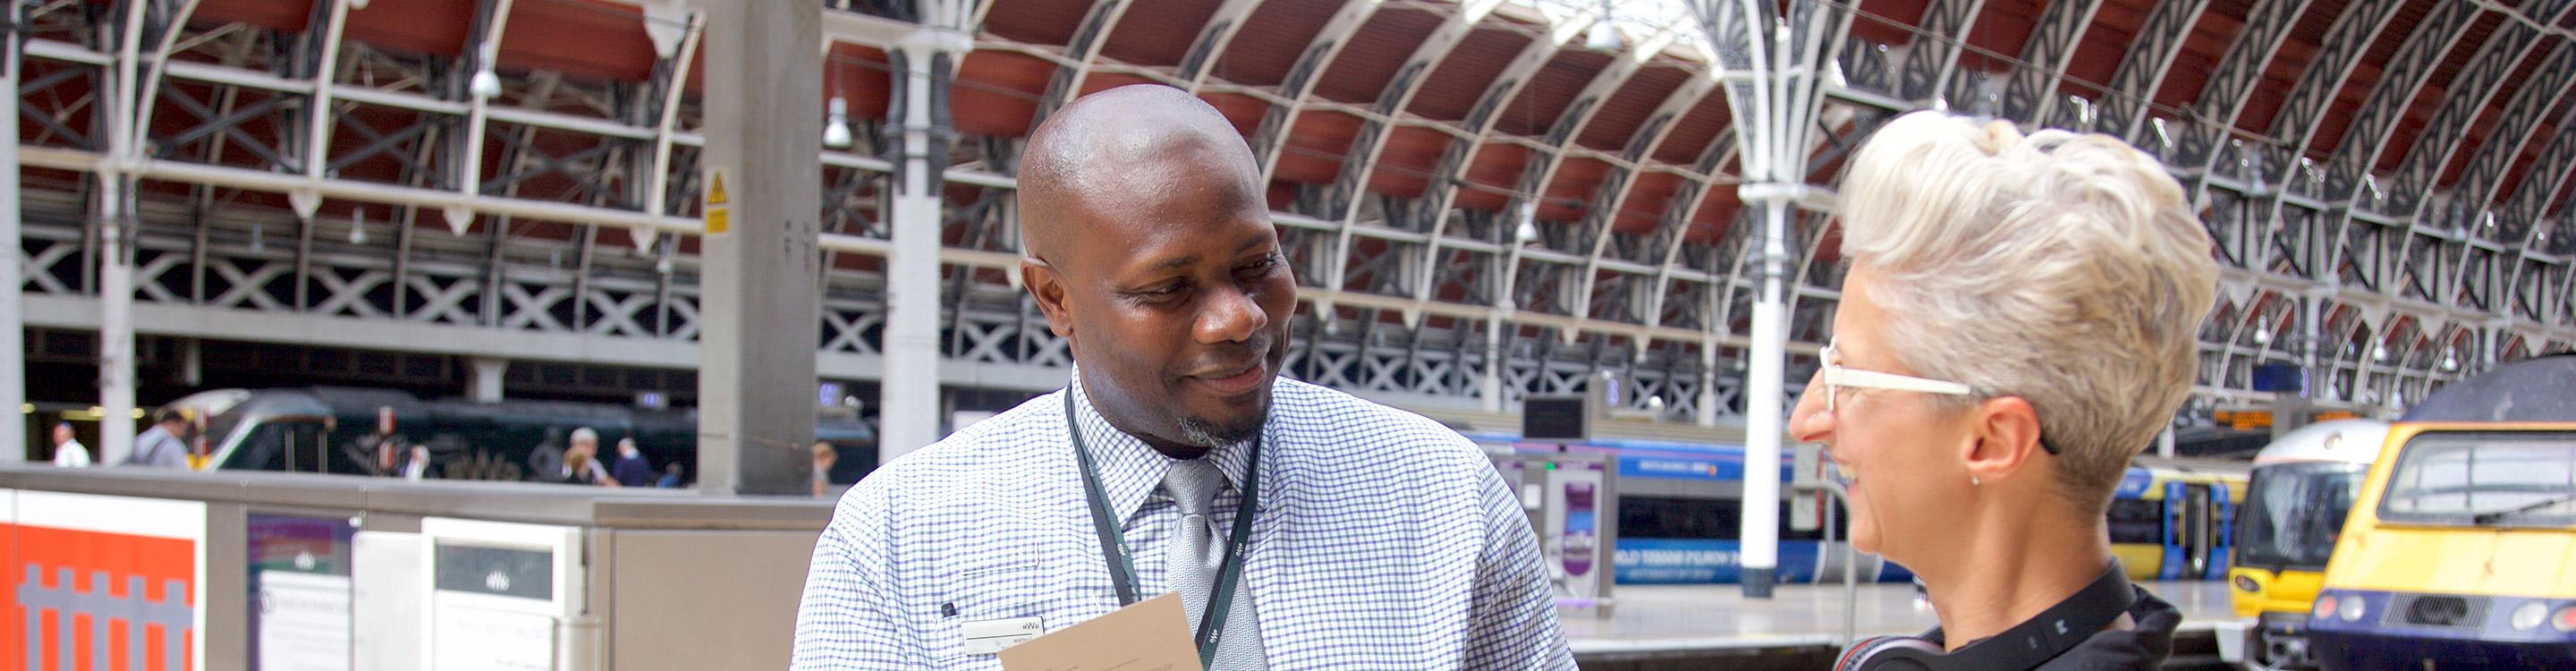 A customer Ambassador helping a customer at Paddington Station